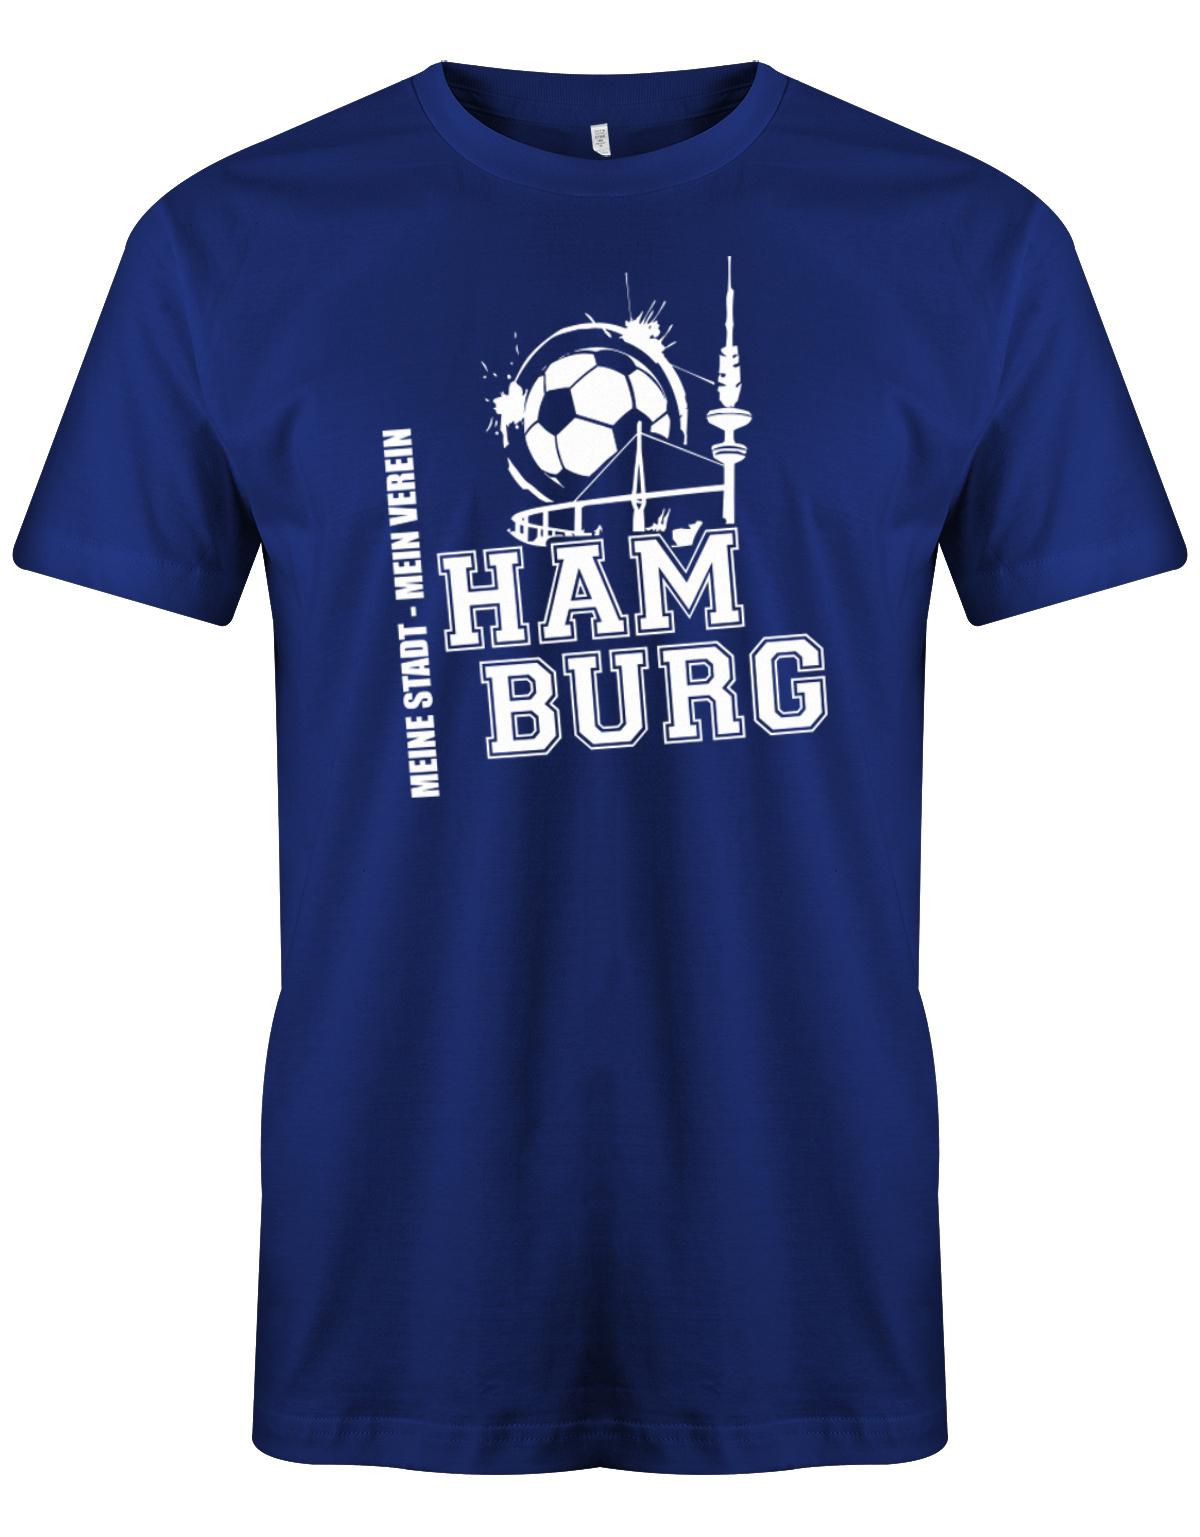 Hamburg-Meine-Stadt-Mein-verein-Herren-Shirt-Royalblau